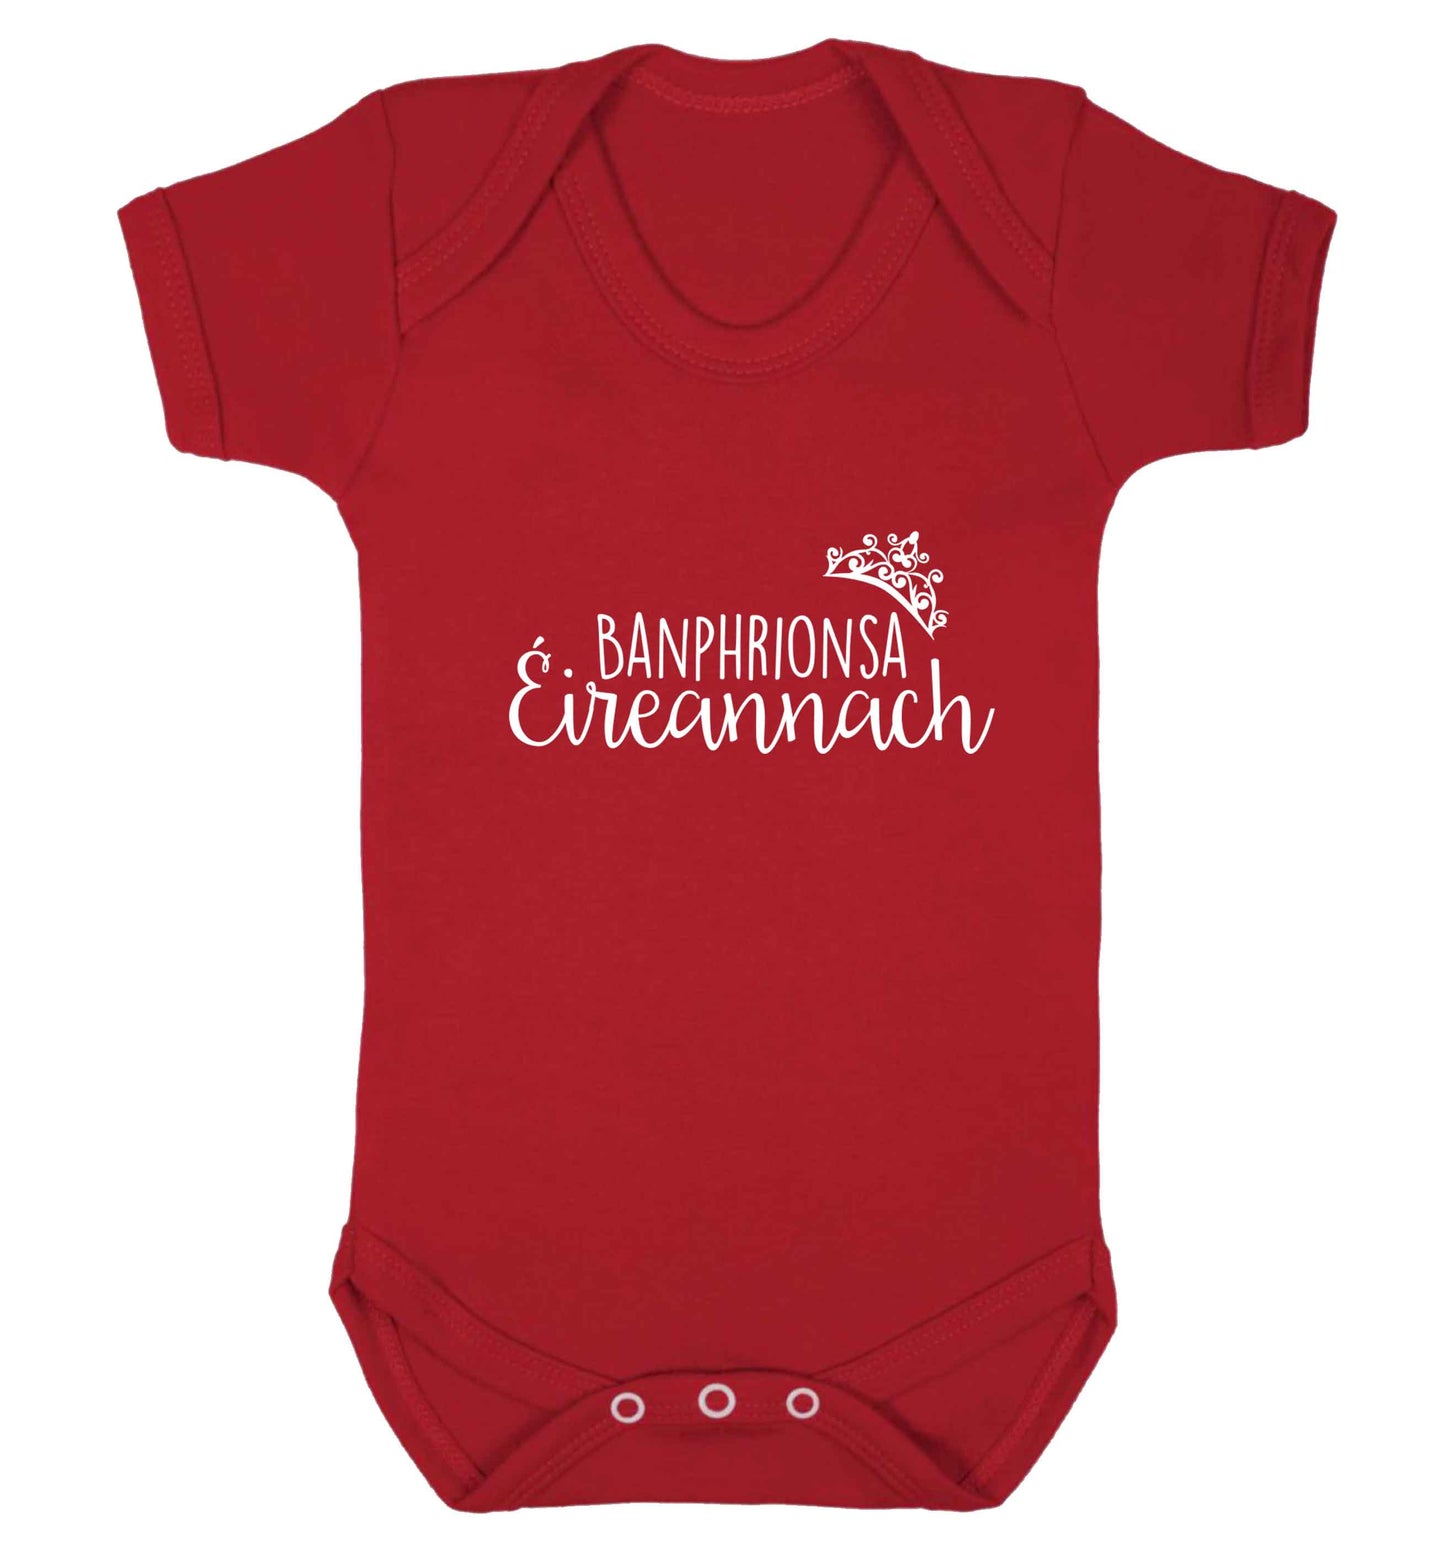 Banphrionsa eireannach baby vest red 18-24 months